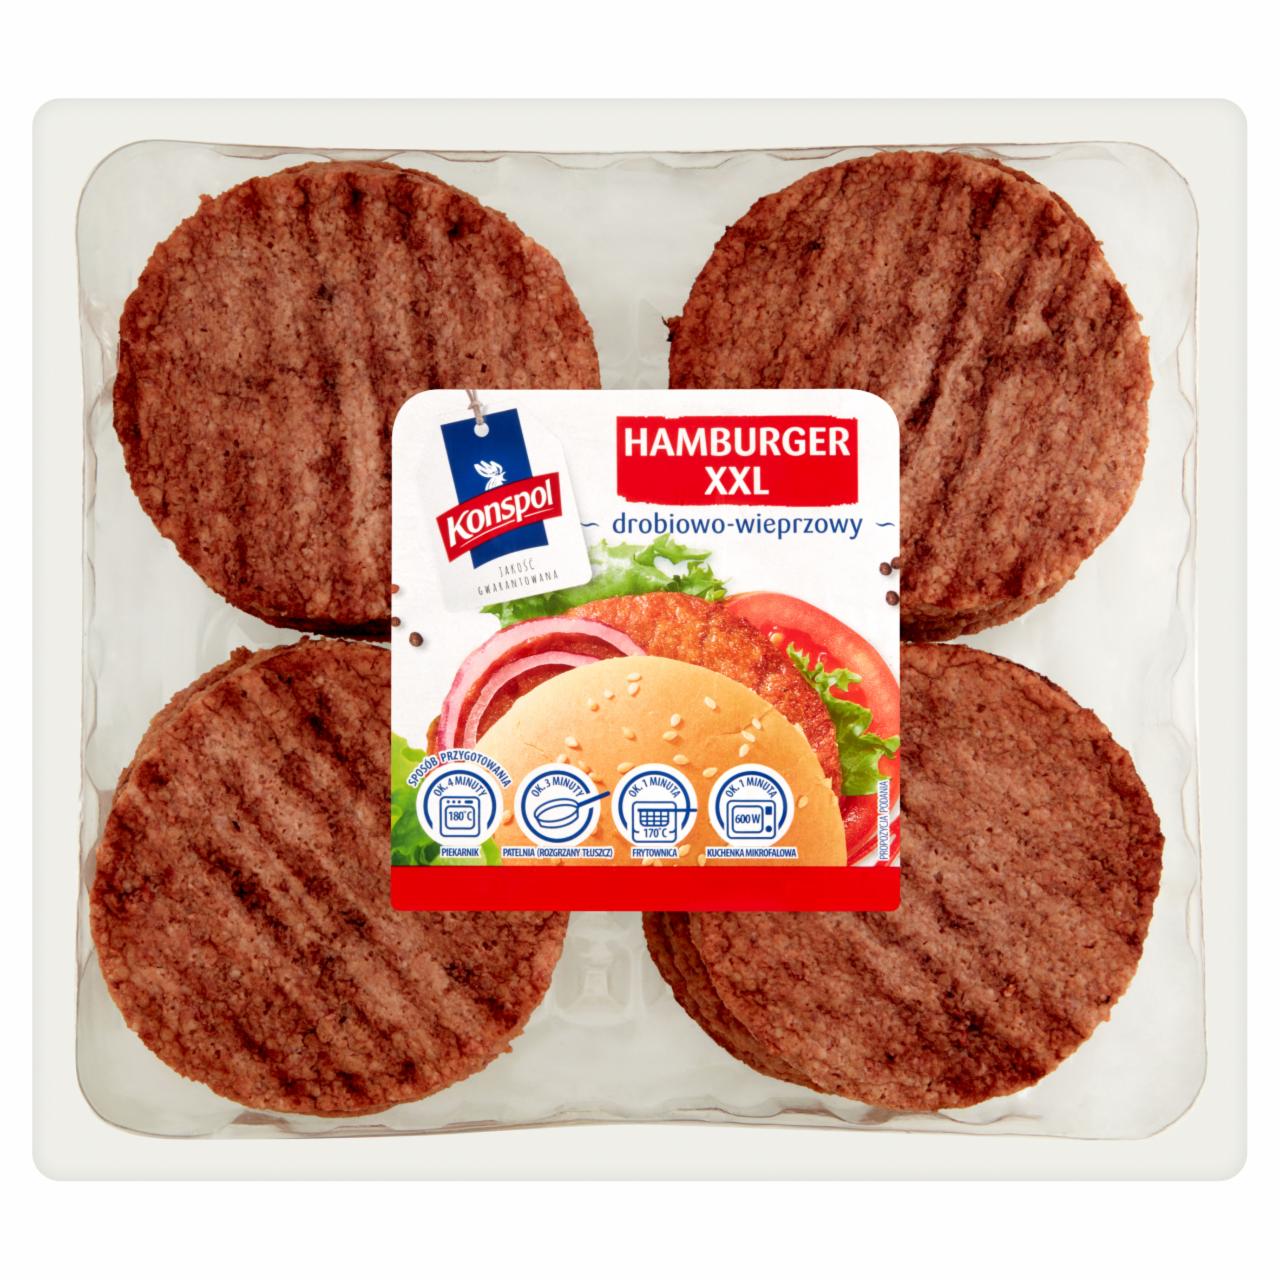 Zdjęcia - Konspol Hamburger XXL drobiowo-wieprzowy 1,6 kg